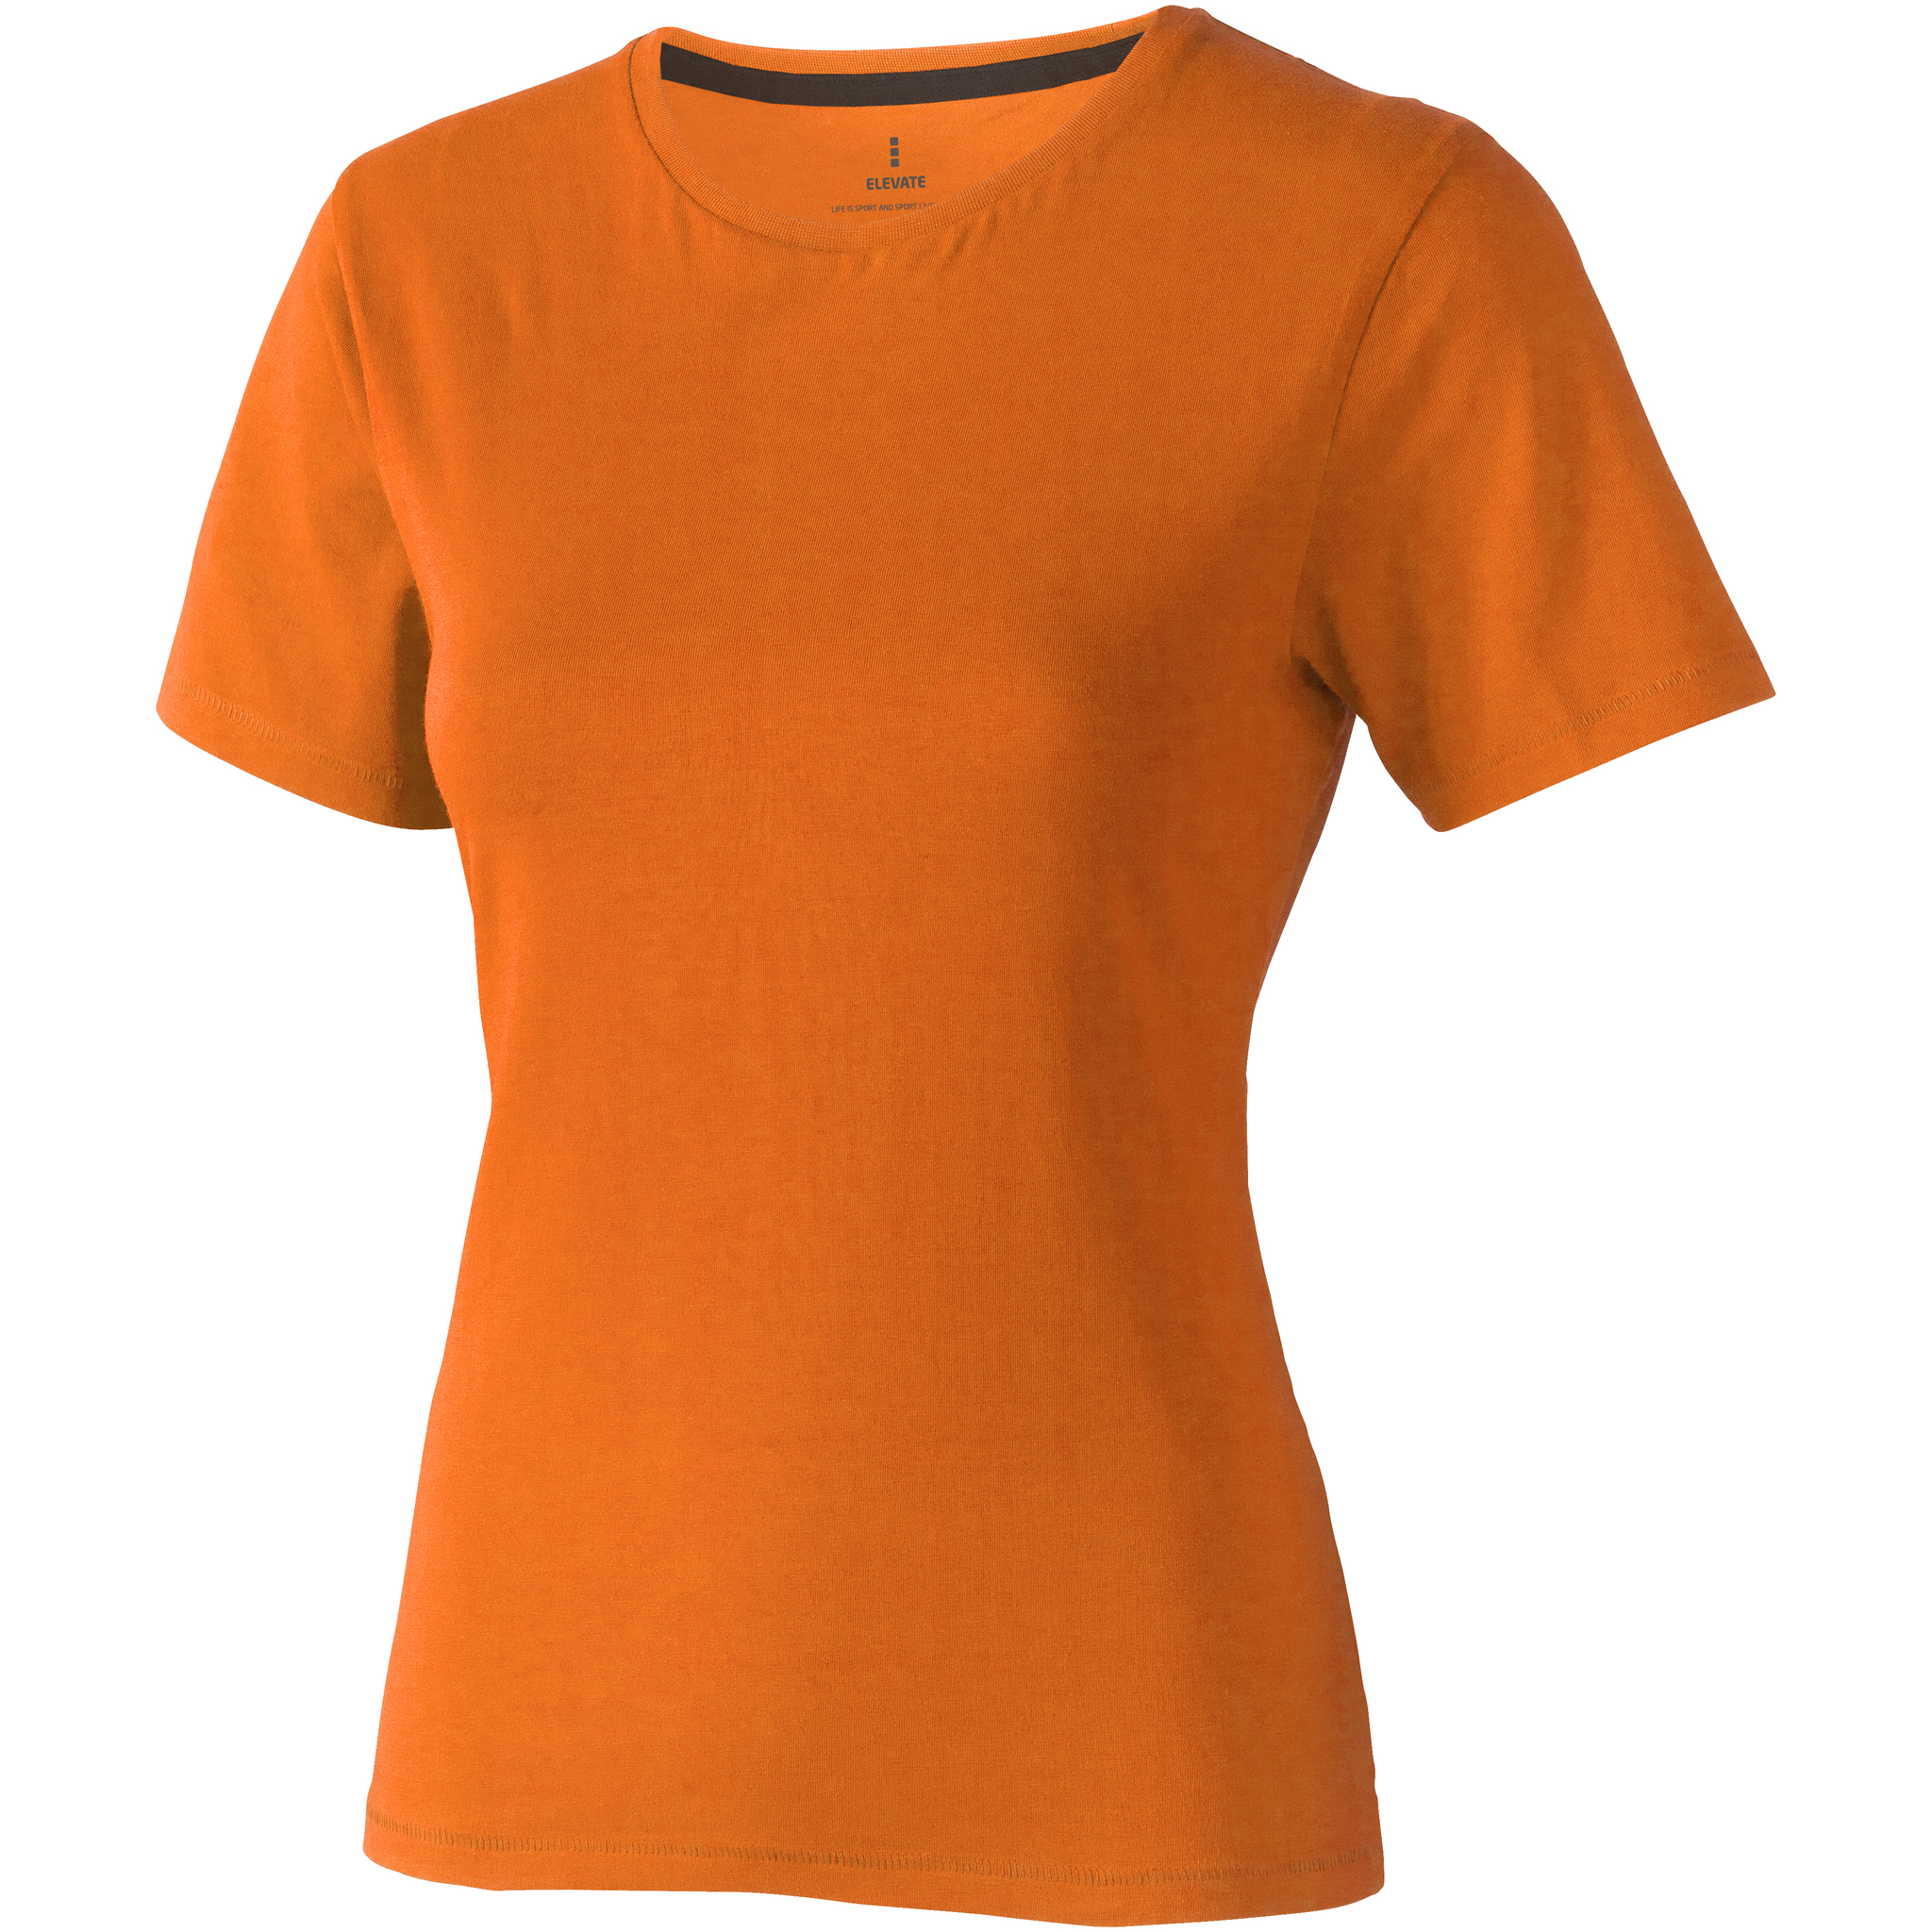 Купить женские футболки оптом. Женская футболка оранж трисар. Оранжевая футболка женская. Оранжевая майка женская. Футболка "Nanaimo" женская.